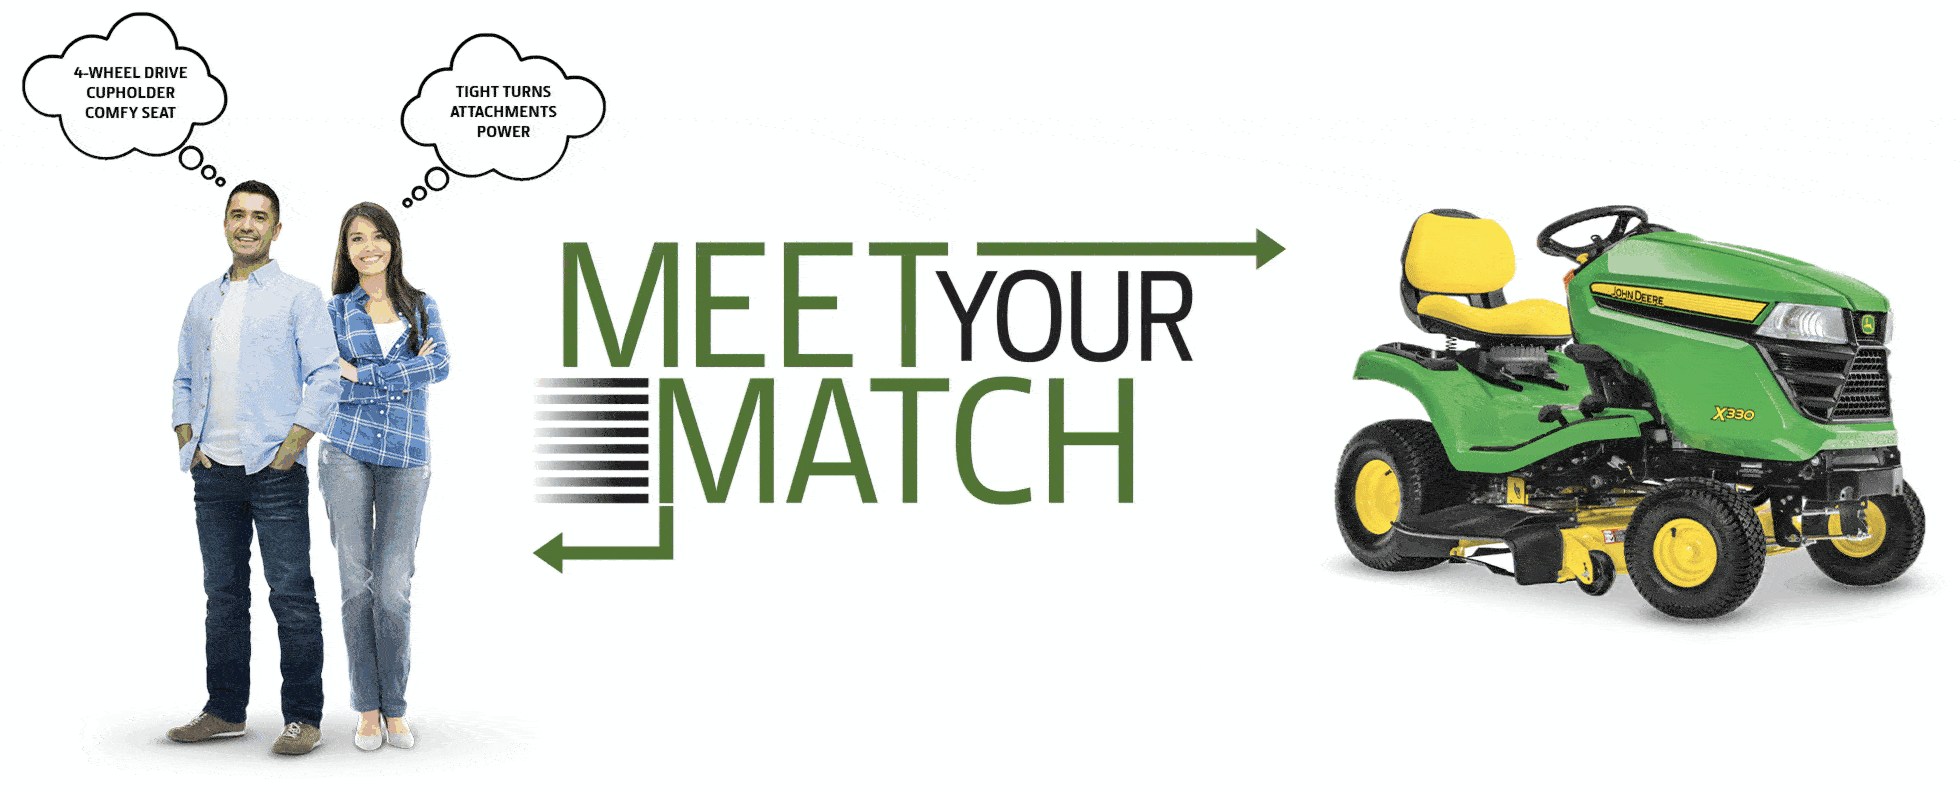 Meet Your Match | RDO Equipment Co.